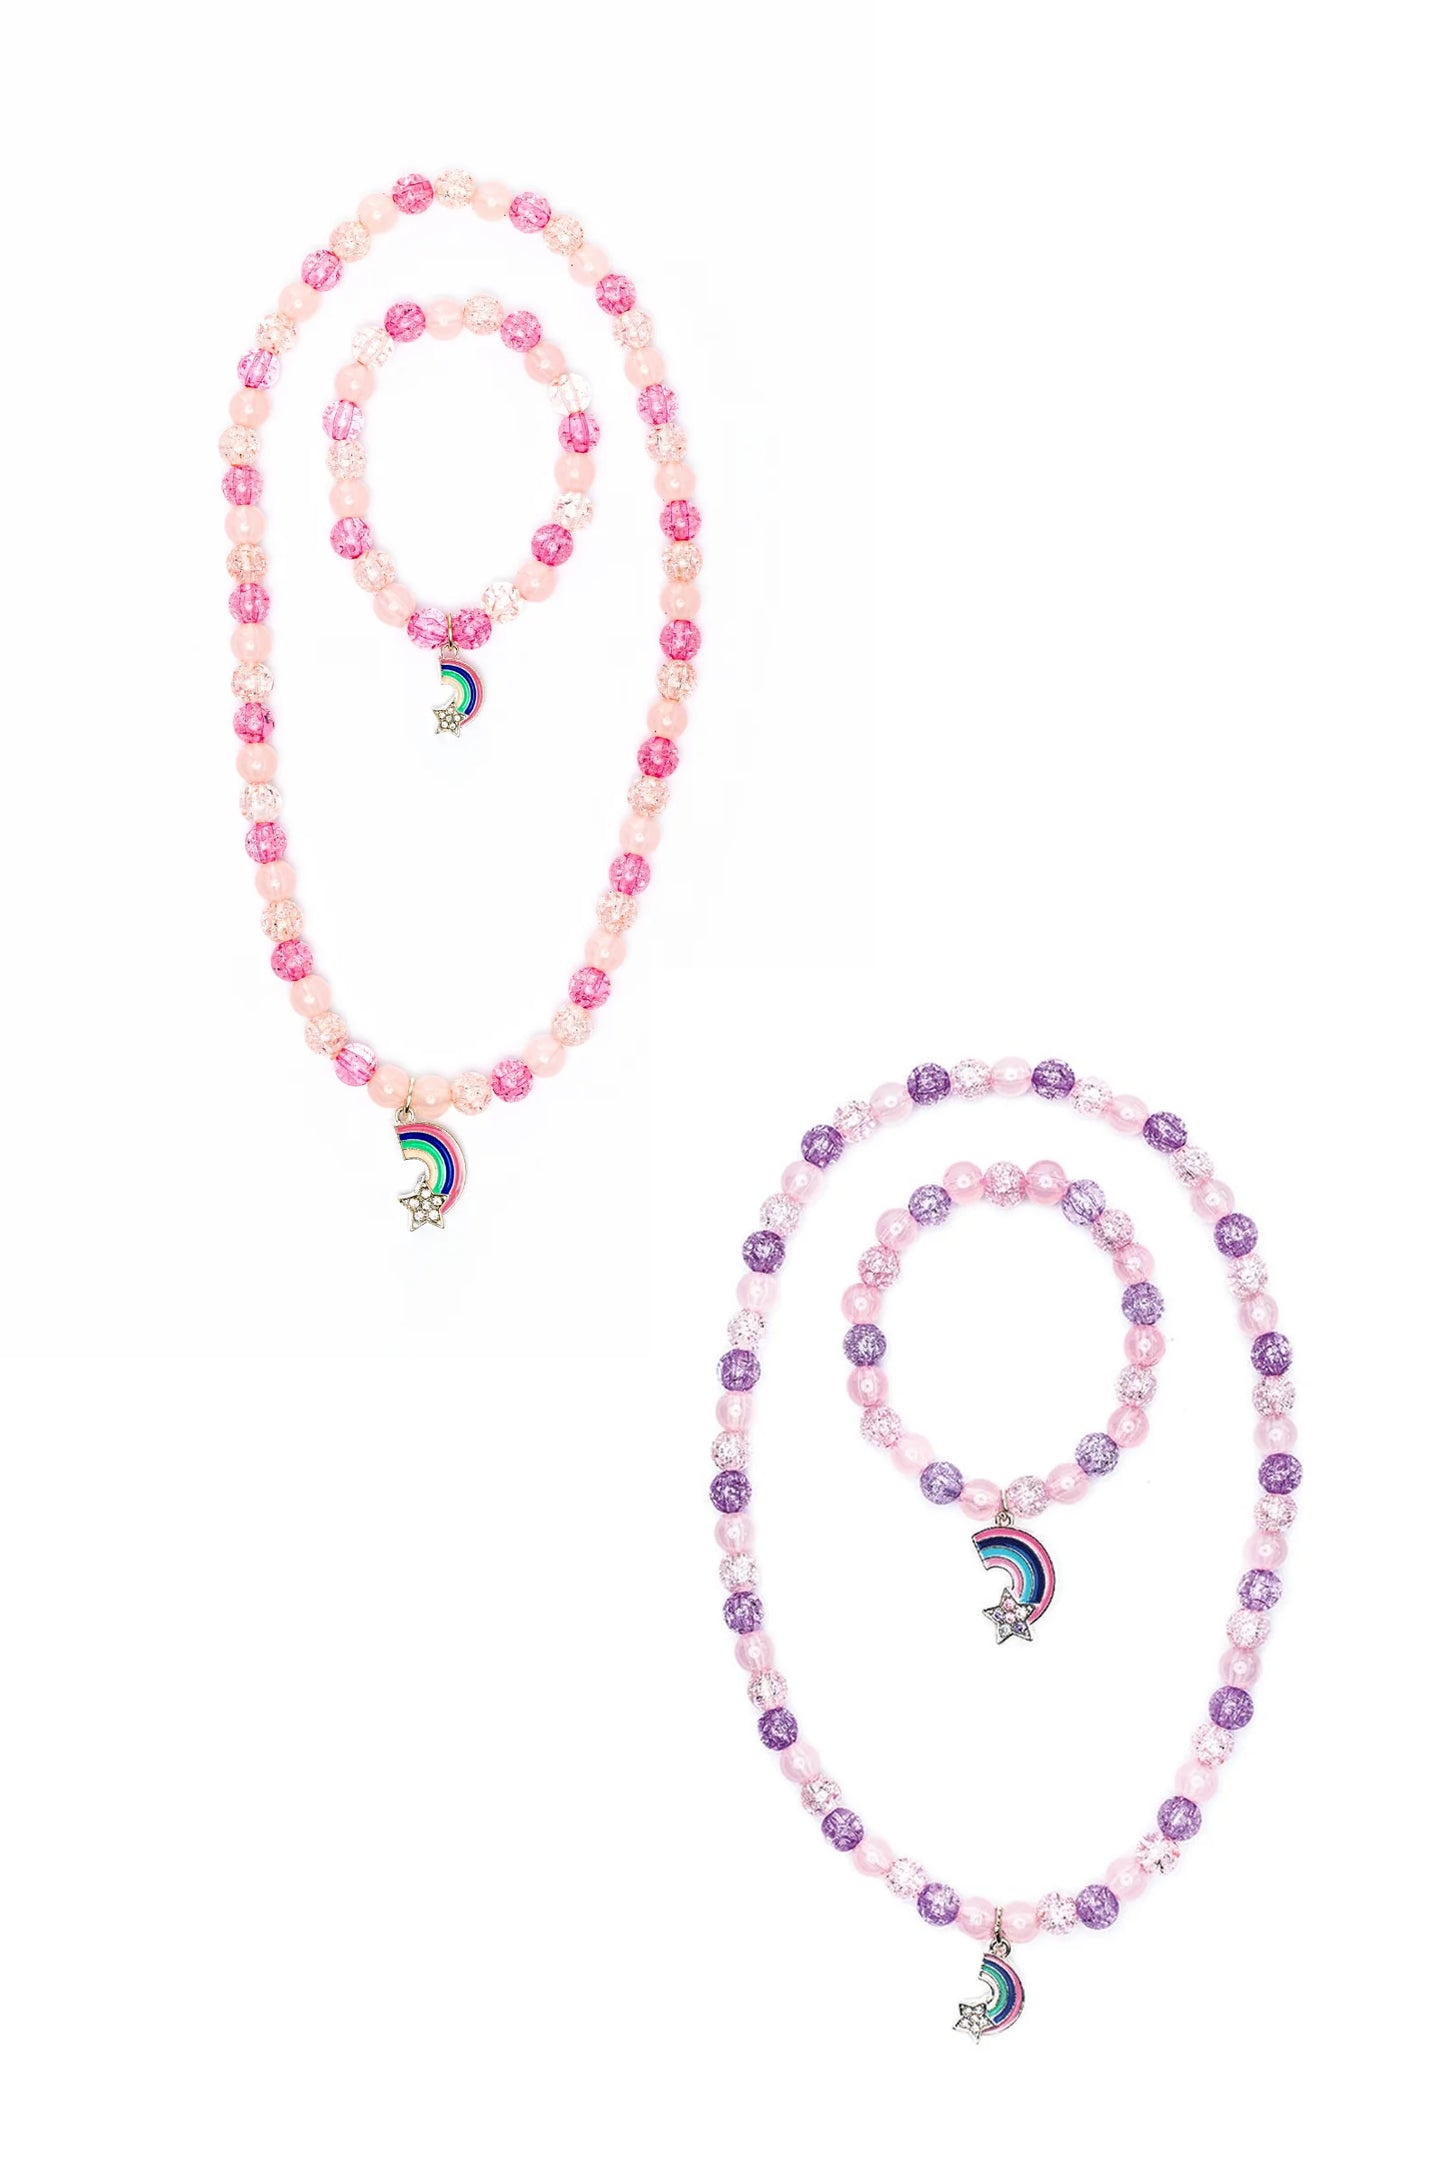 Purple Rainbow Necklace & Bracelet Set  - Doodlebug's Children's Boutique